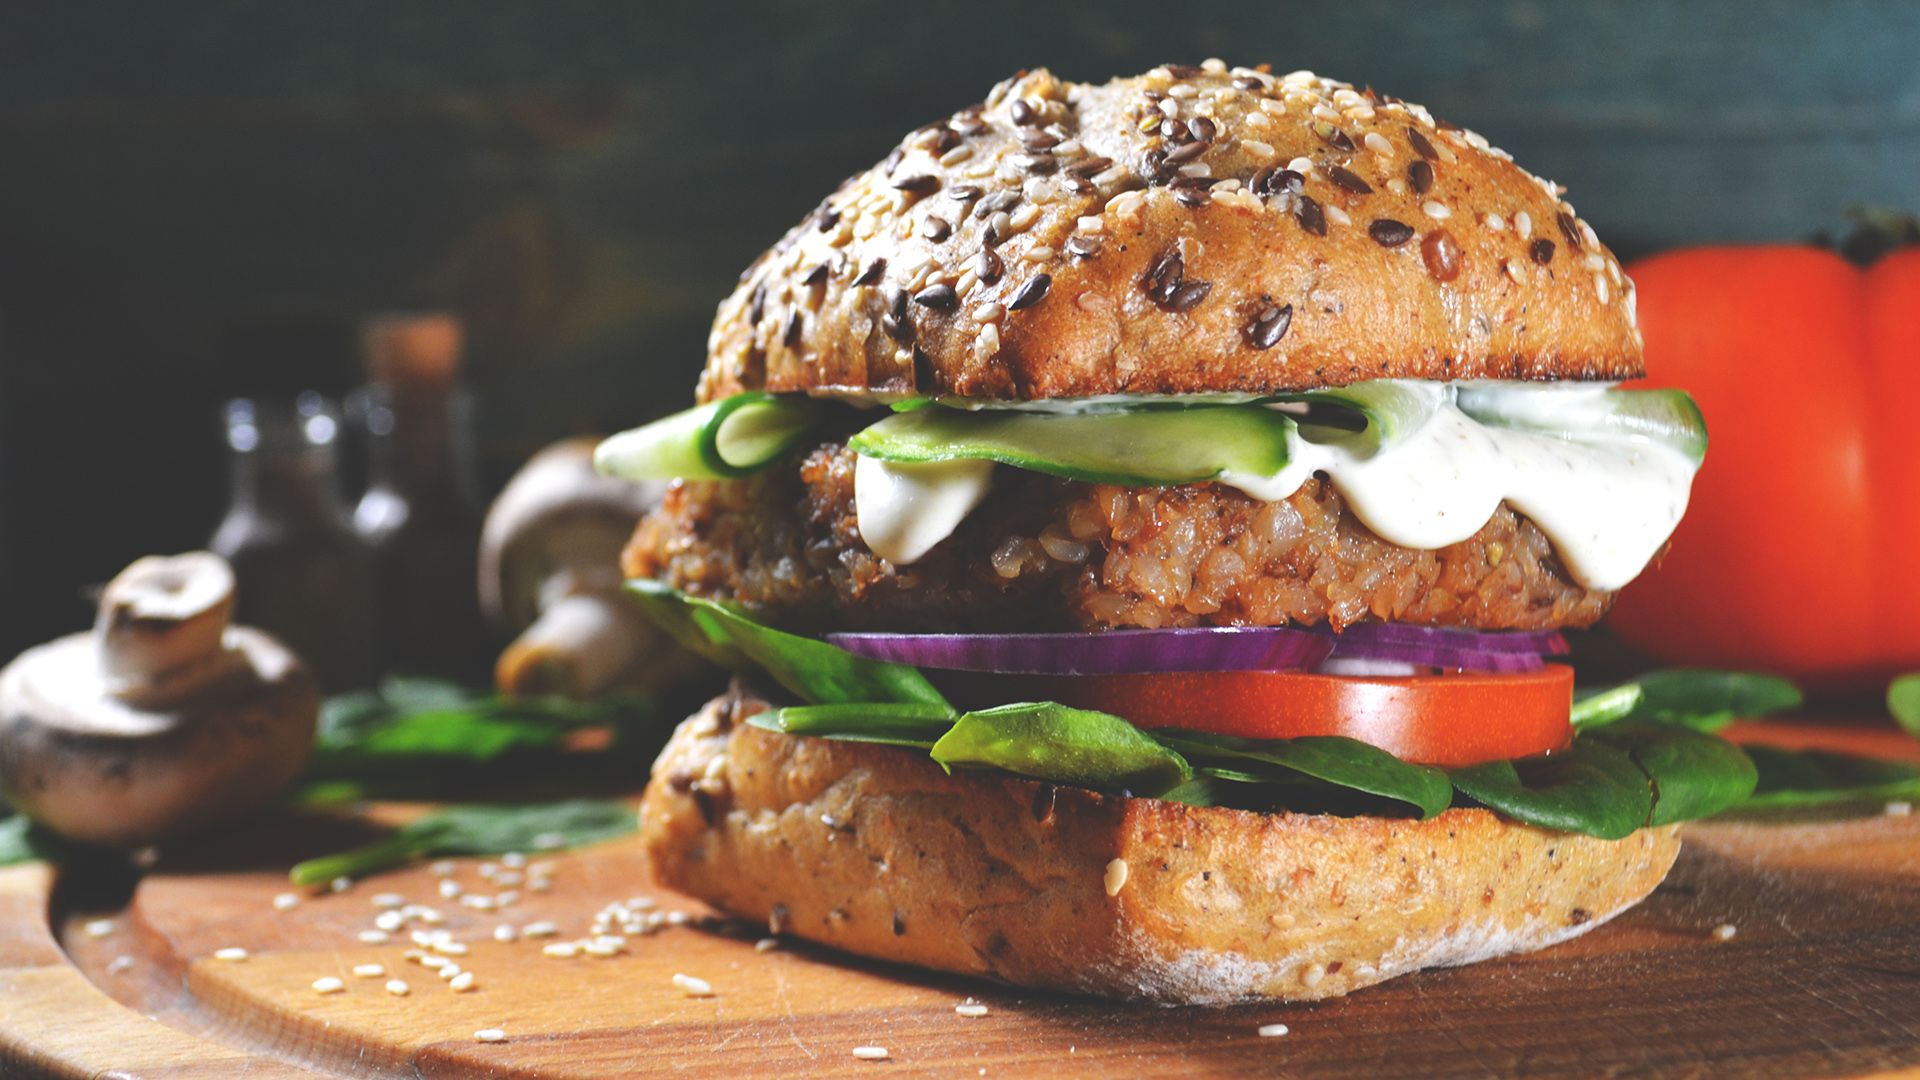 Los locales de “comida rápida” con chefs veganos al mando de sus cocinas comenzaron a proliferar en todo el mundo (Shutterstock)